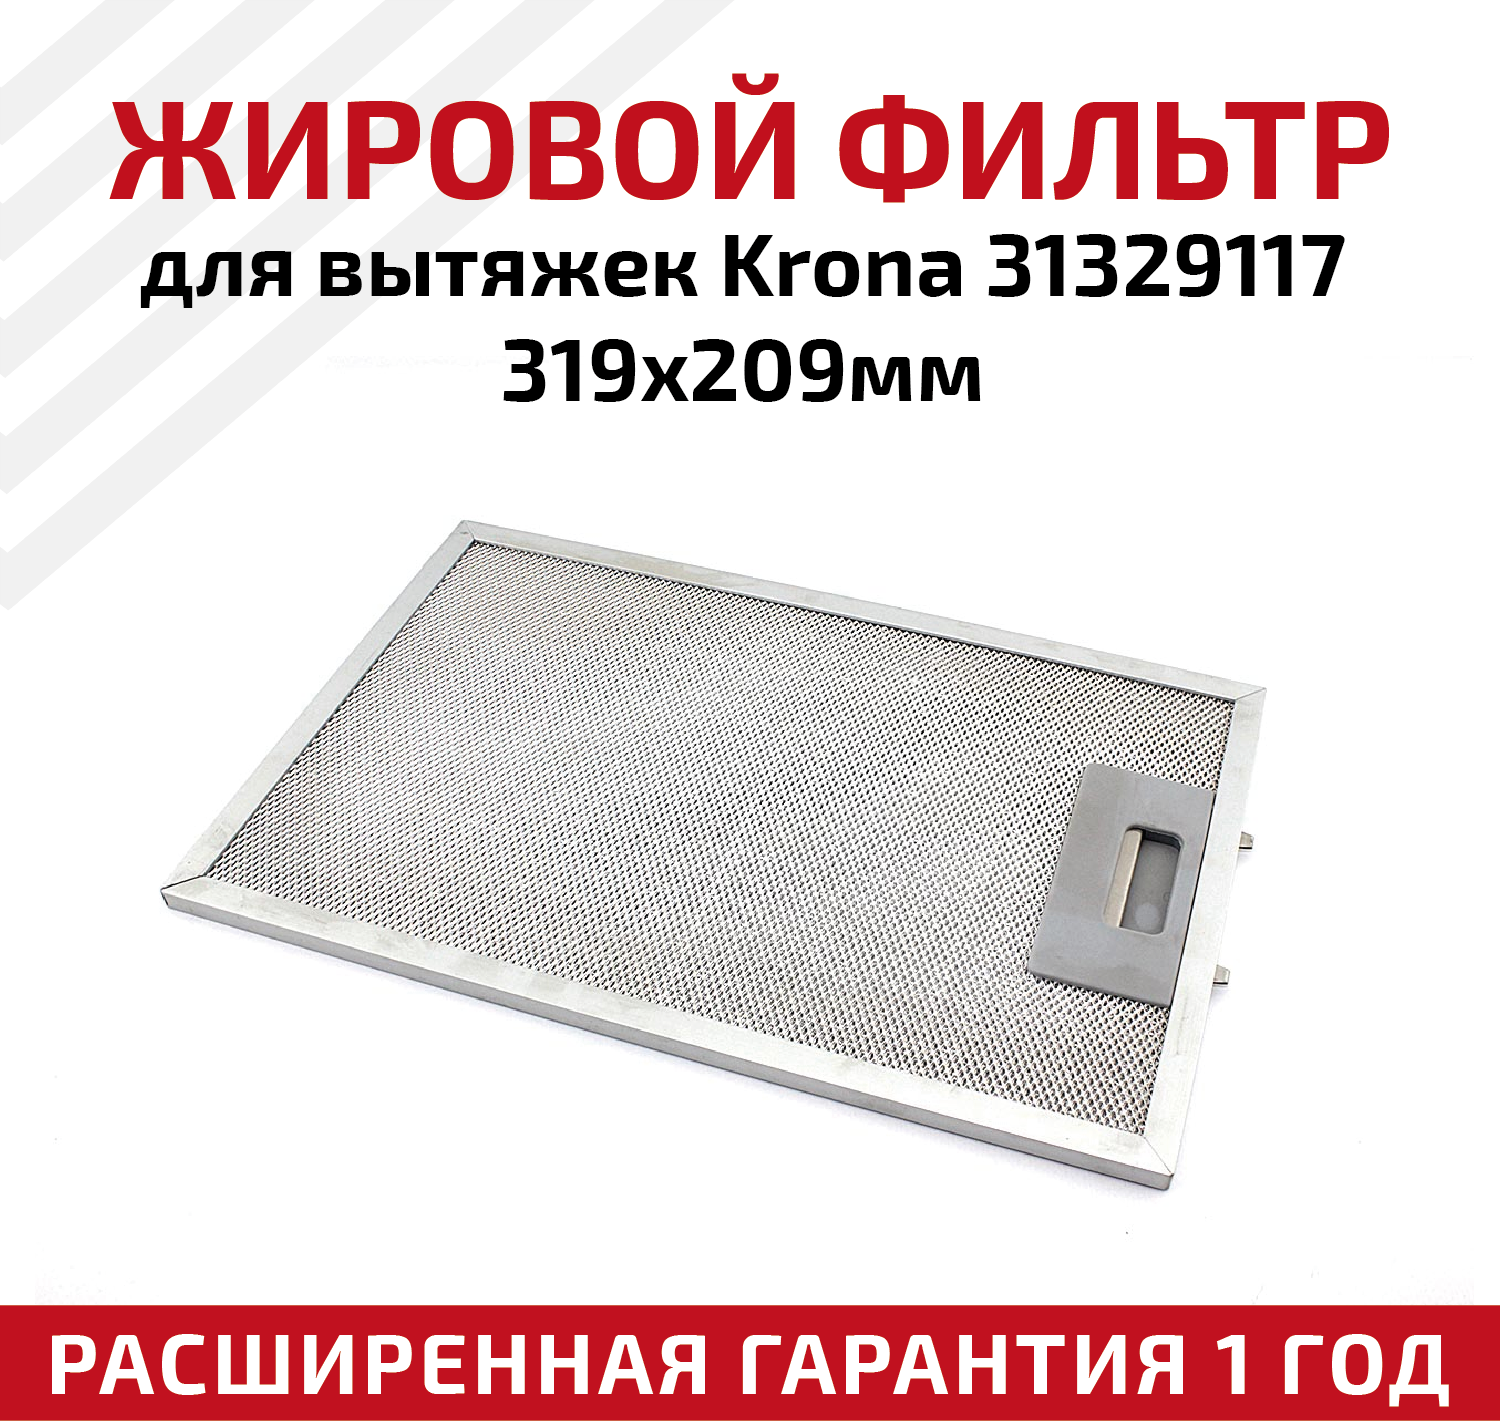 Жировой фильтр (кассета) алюминиевый (металлический) рамочный для кухонных вытяжек Krona 31329117, многоразовый, 319х209мм